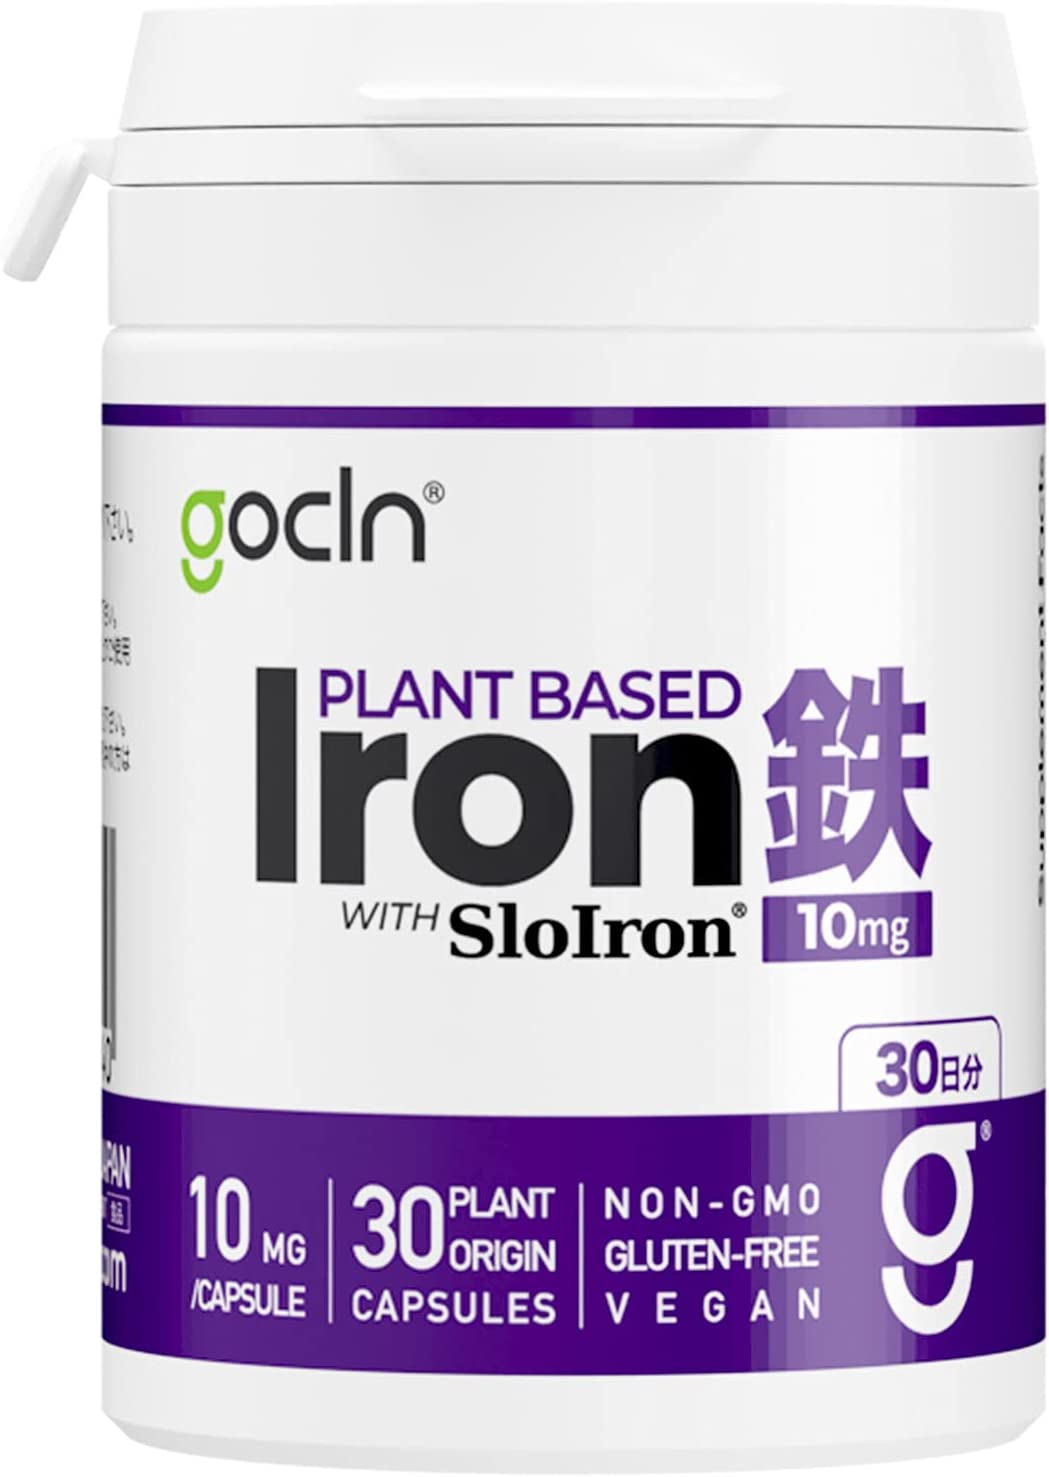 цена Железо GoCLN растительного происхождения 10 мг, 30 таблеток